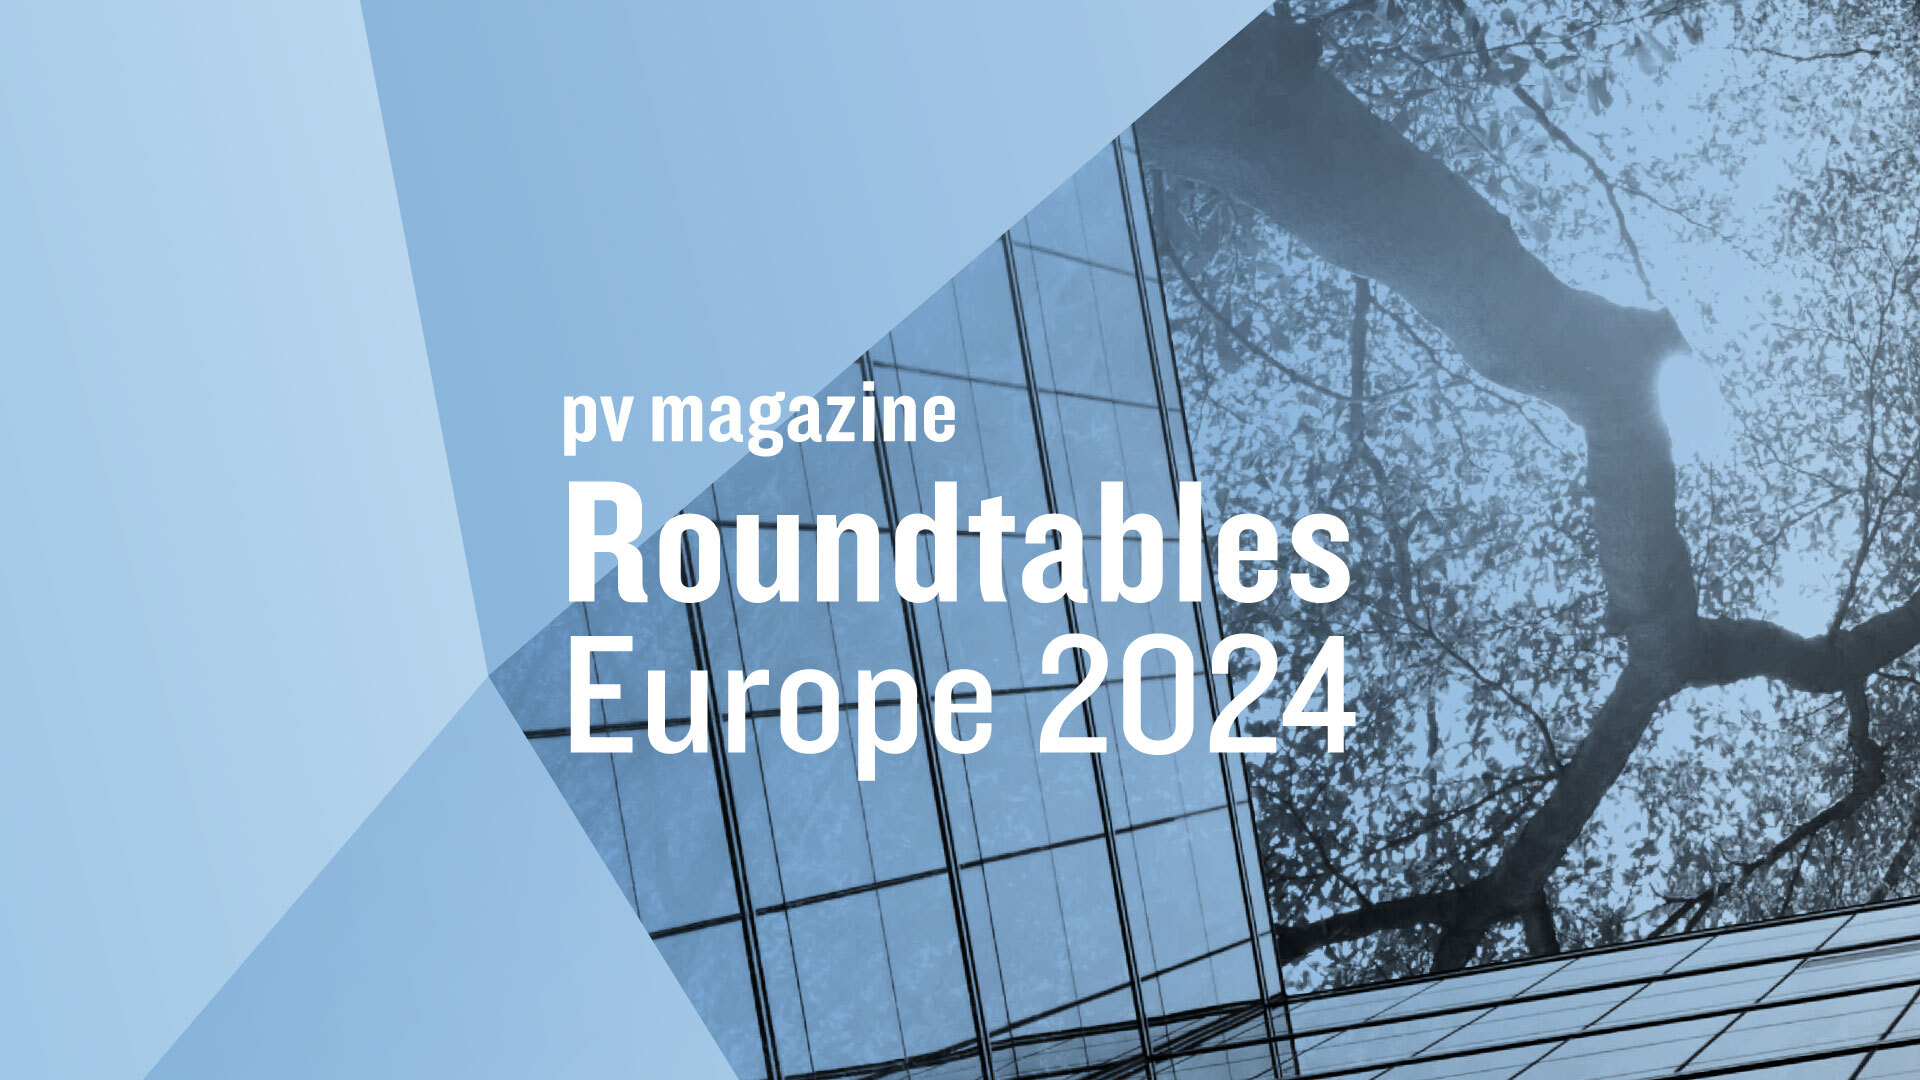 Roundtables Europe 2024 pv magazine